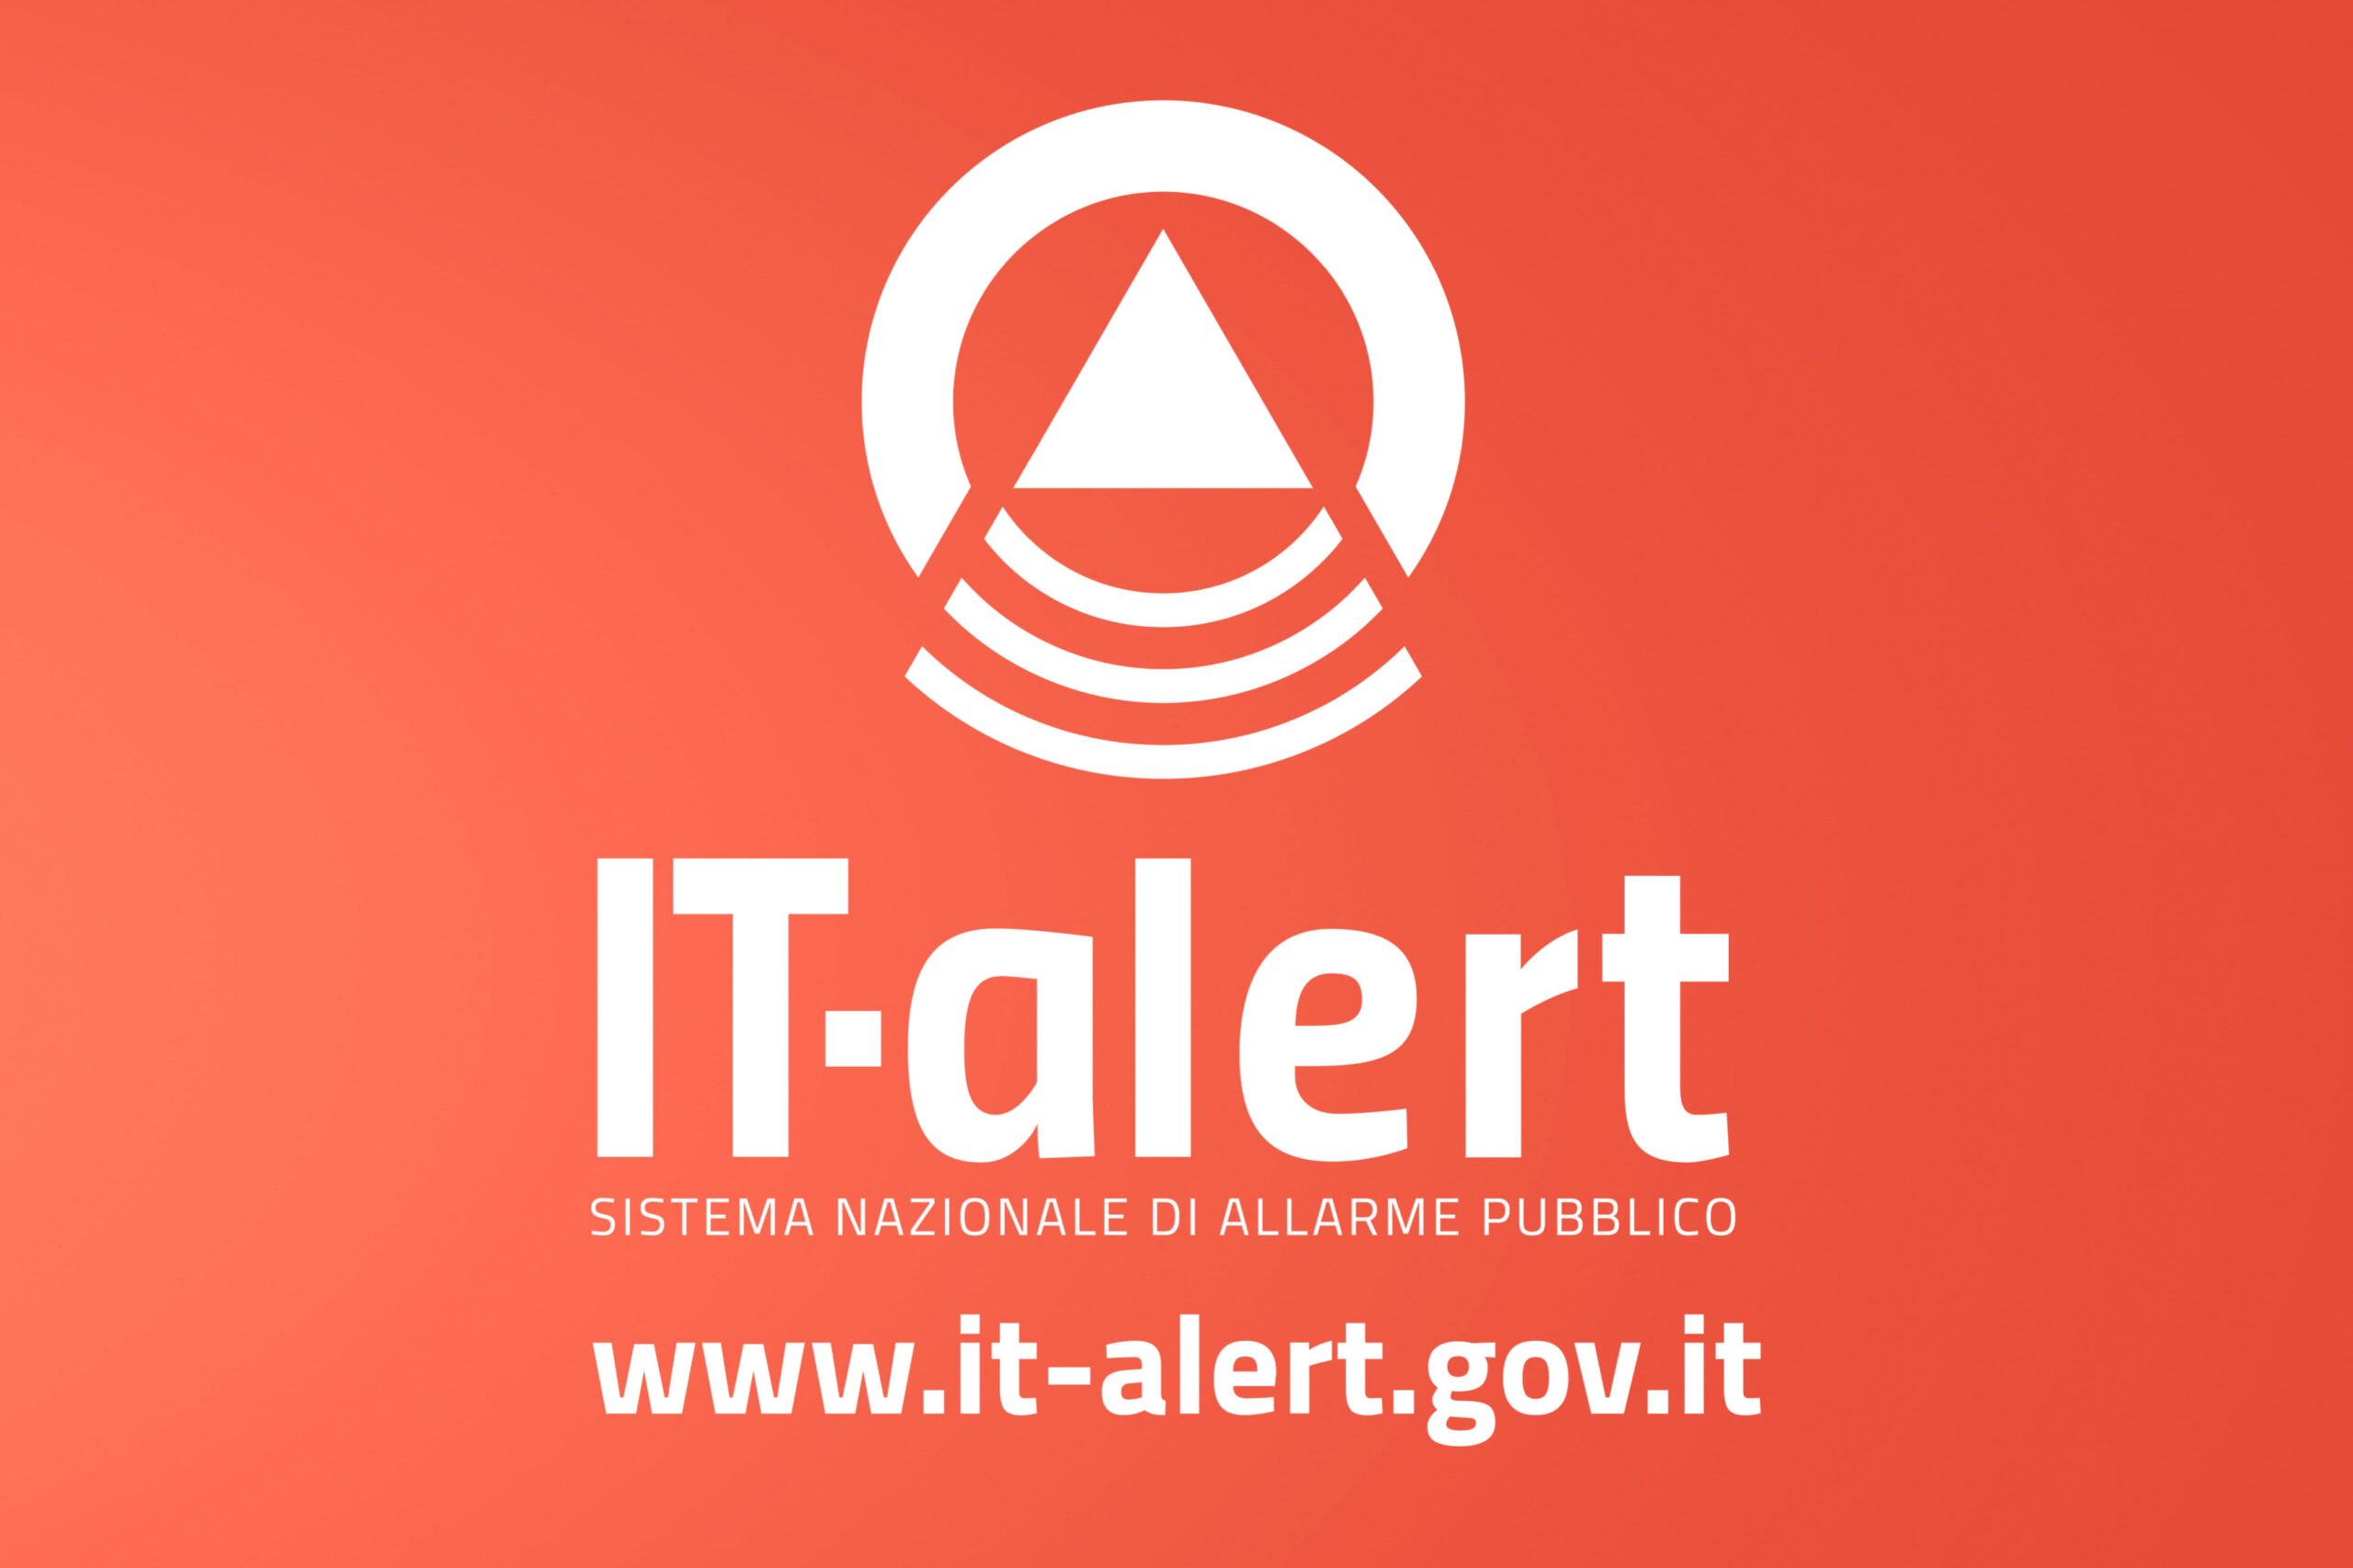 Approvazione indicazioni operative e attivazione del sistema di allarme pubblico IT-Alert - Avviso ai Comuni